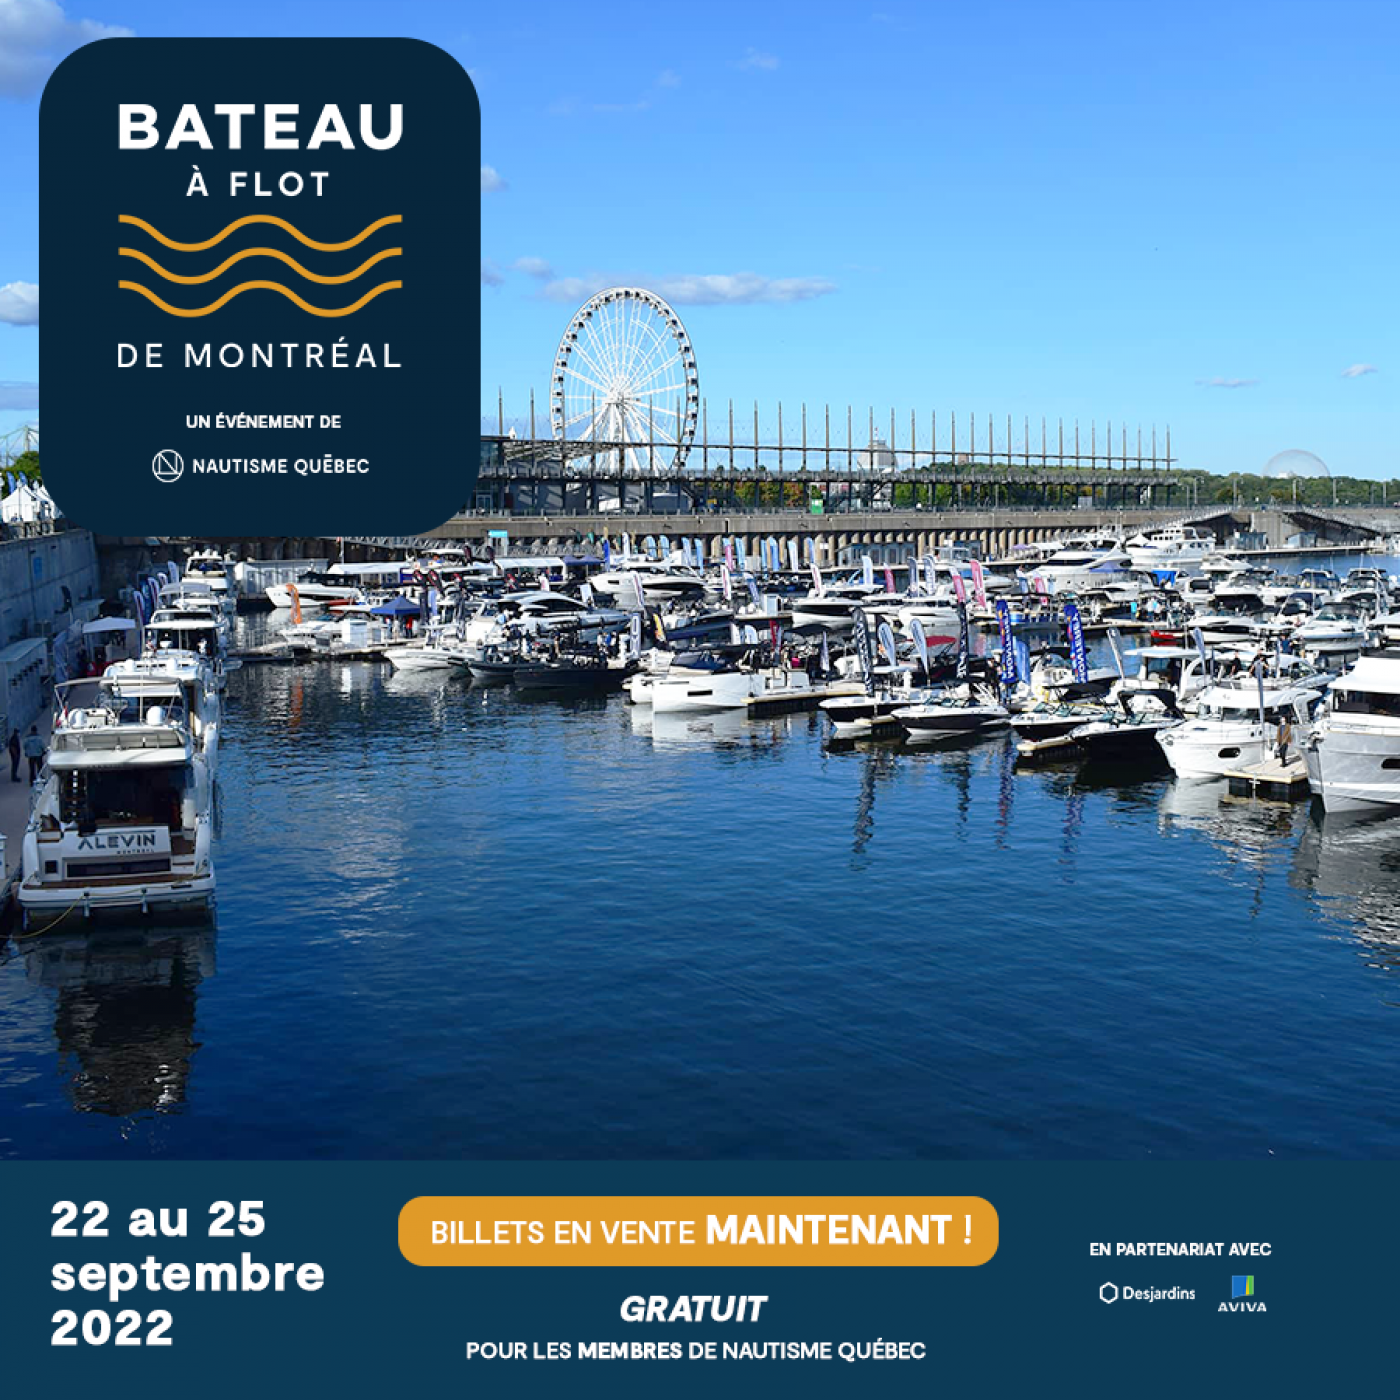 Du 22 au 25 septembre, près d’une centaine d’embarcations seront présentées en exclusivité au Bateau à flot de Montréal, situé dans le bassin Jacques-Cartier, en plein cœur du Vieux-Port de Montréal. Billets en vente dès maintenant!